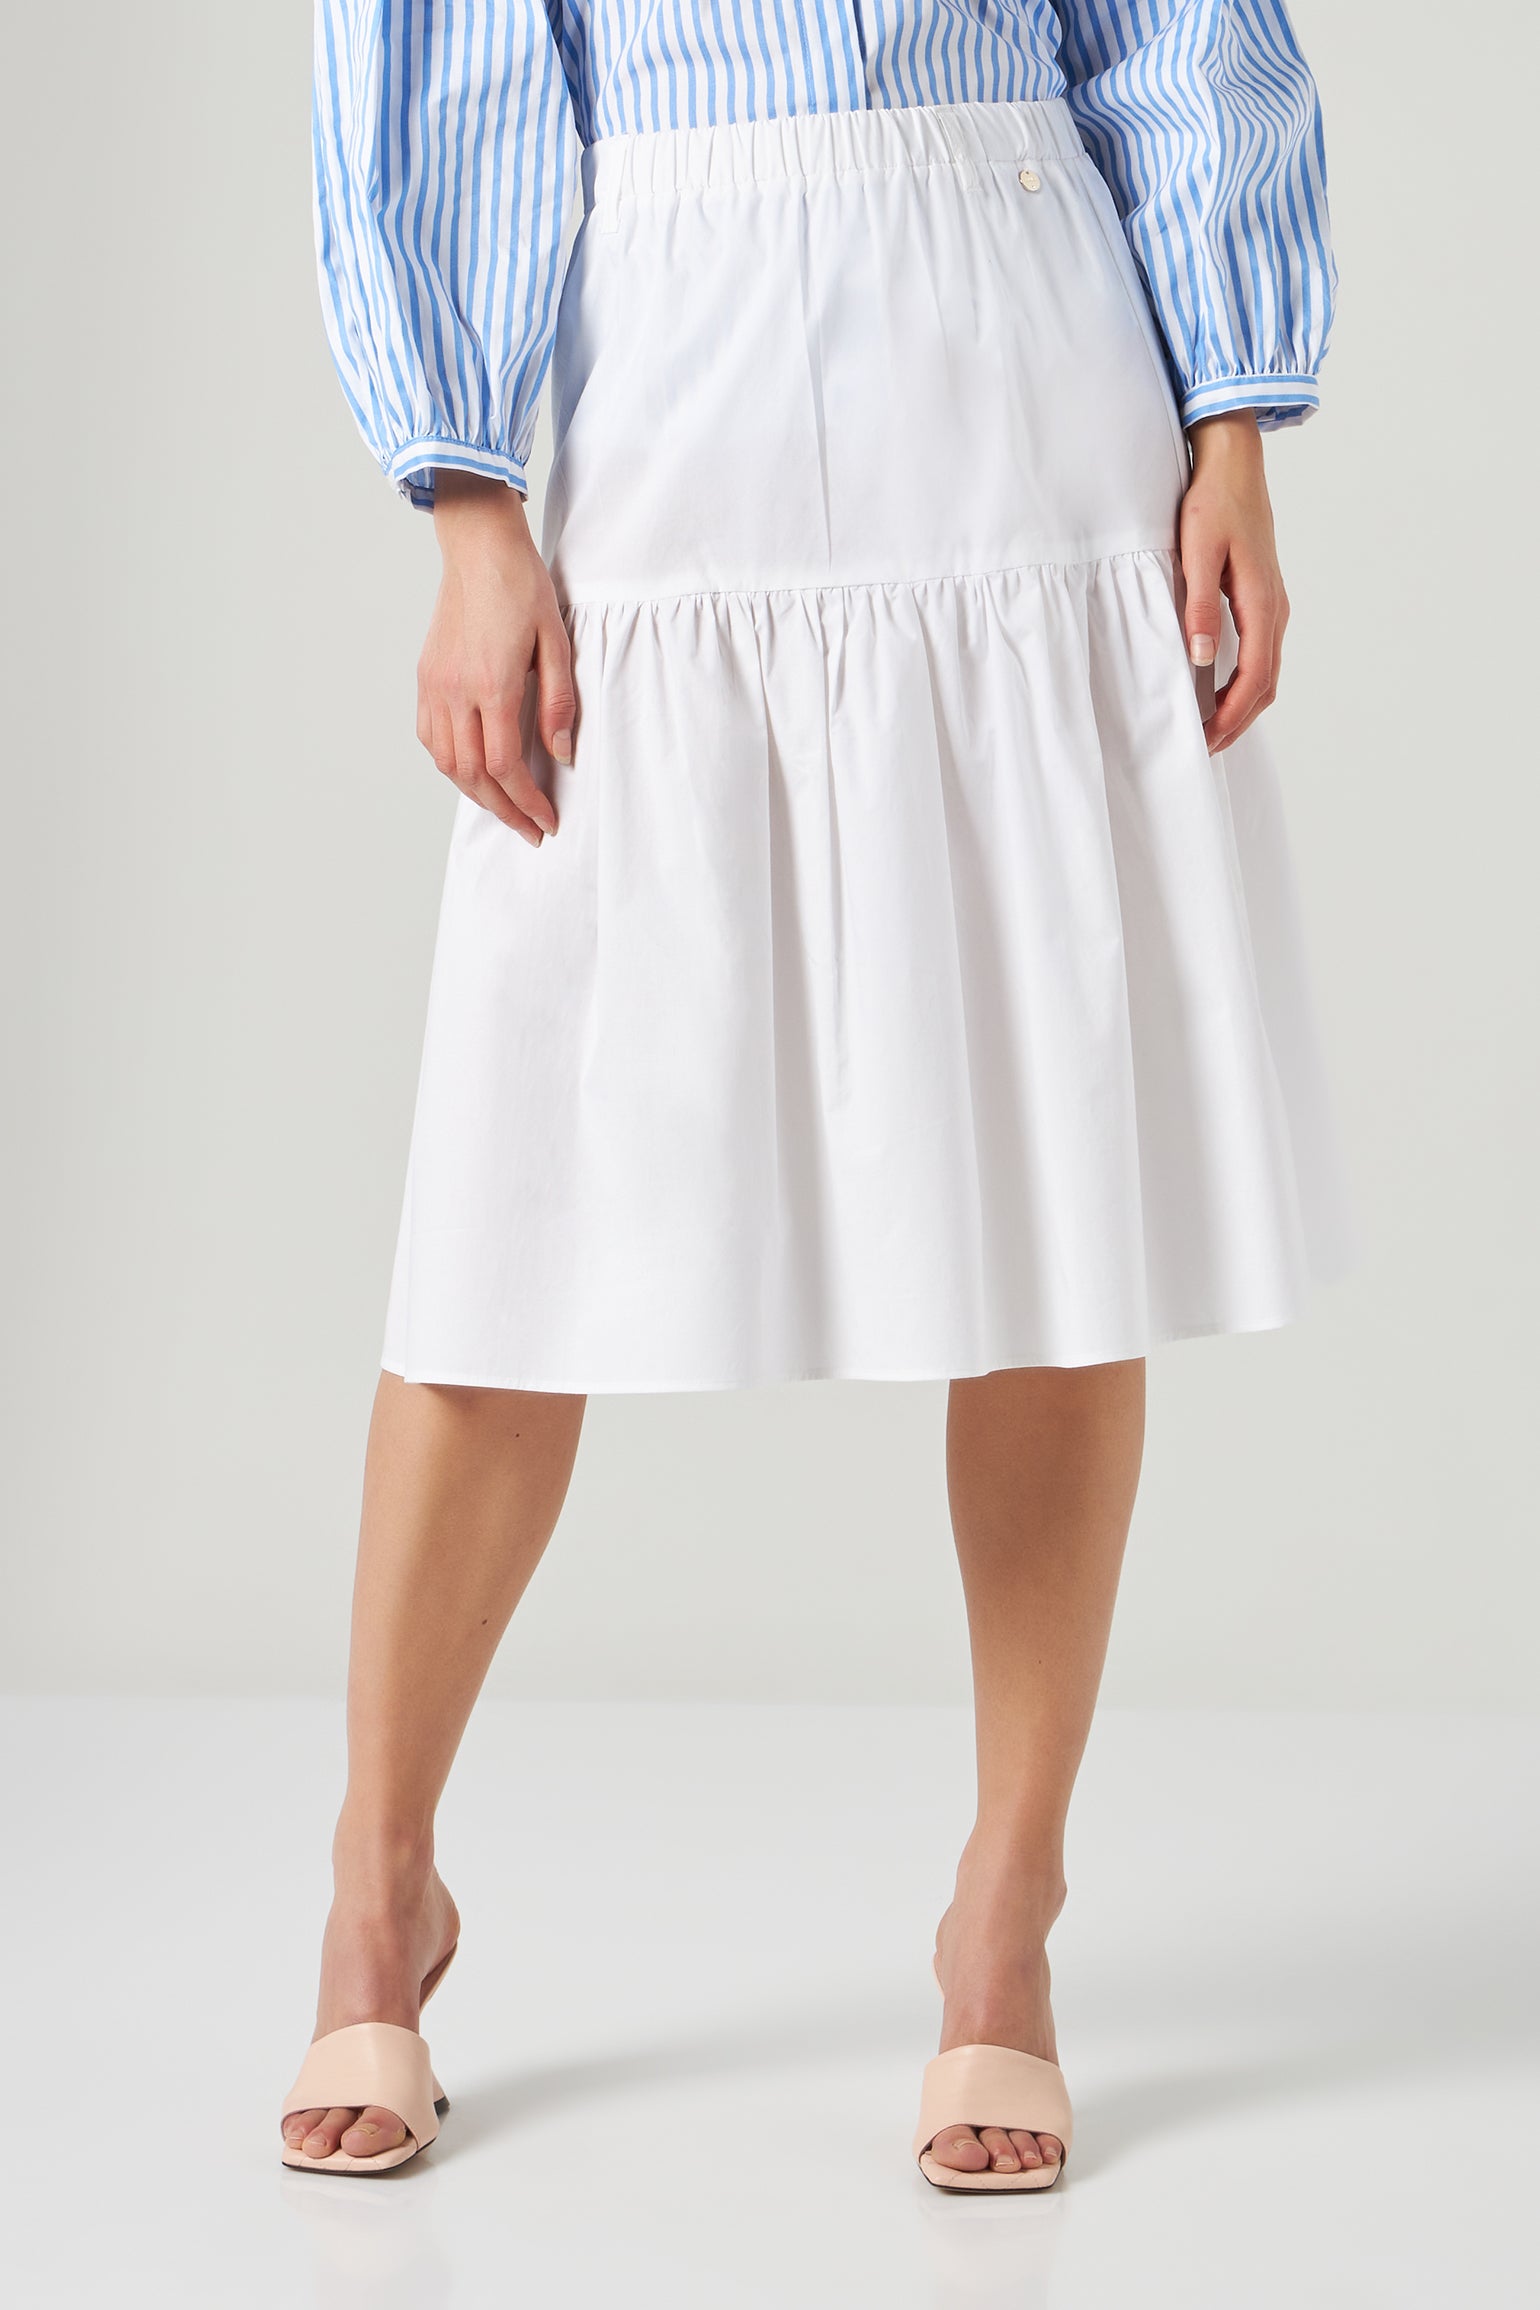 Liu Jo Kids striped cotton skirt set - White